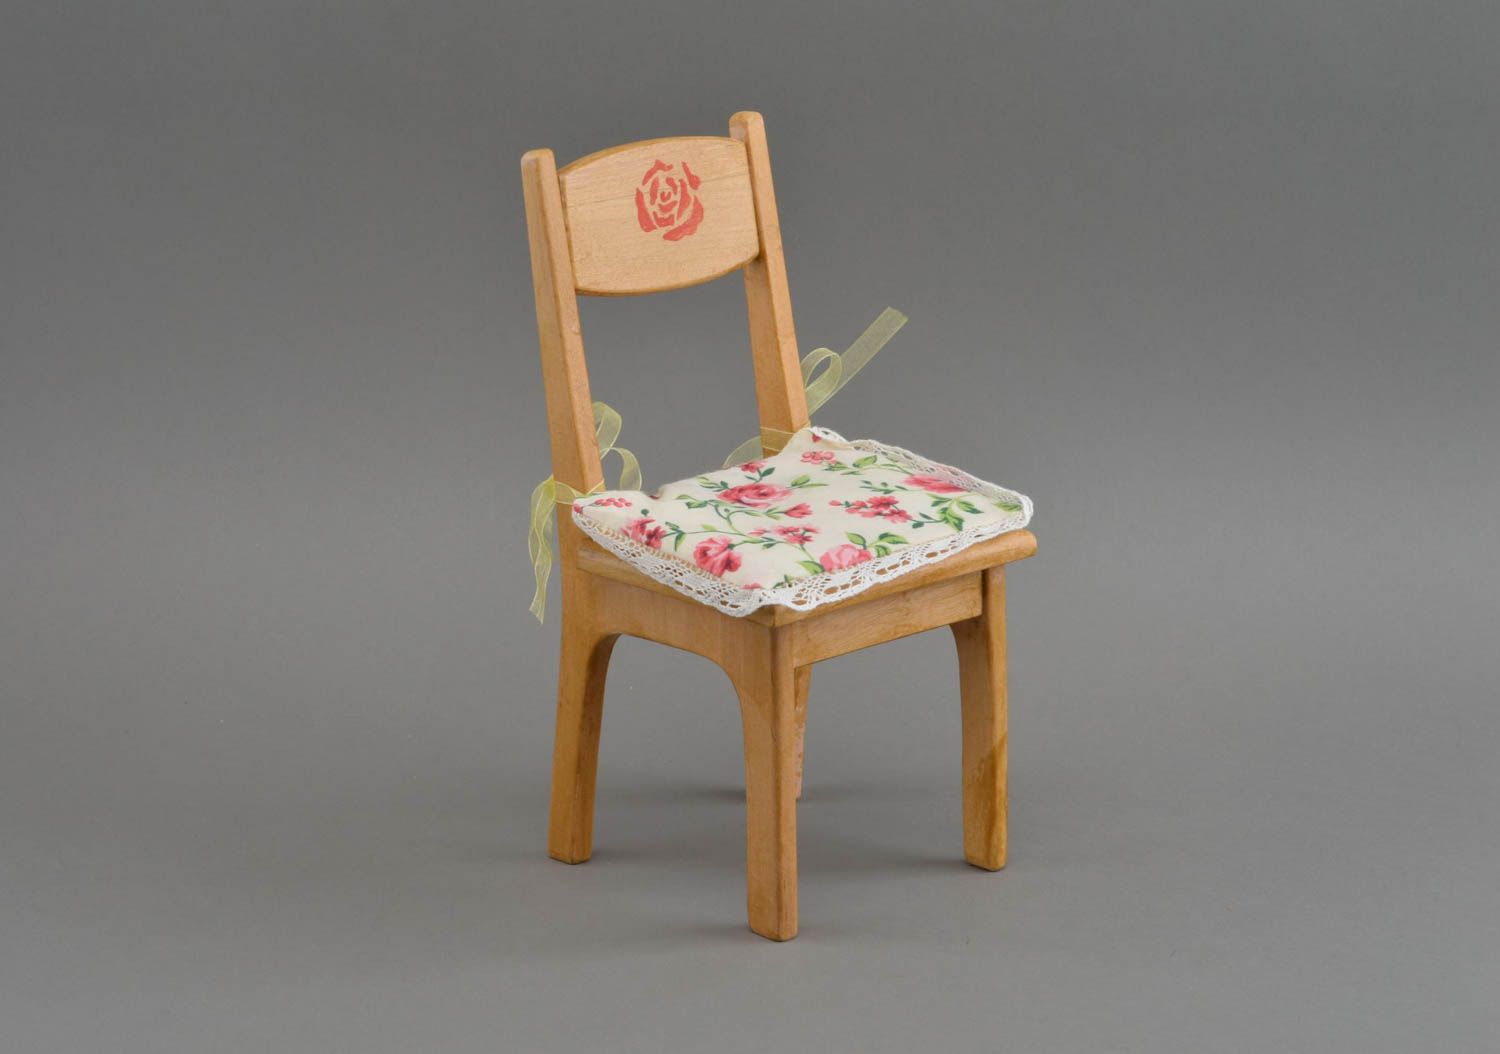 Хлопковая накладка на кукольный стул цветочная оригинальная ручной работы фото 1